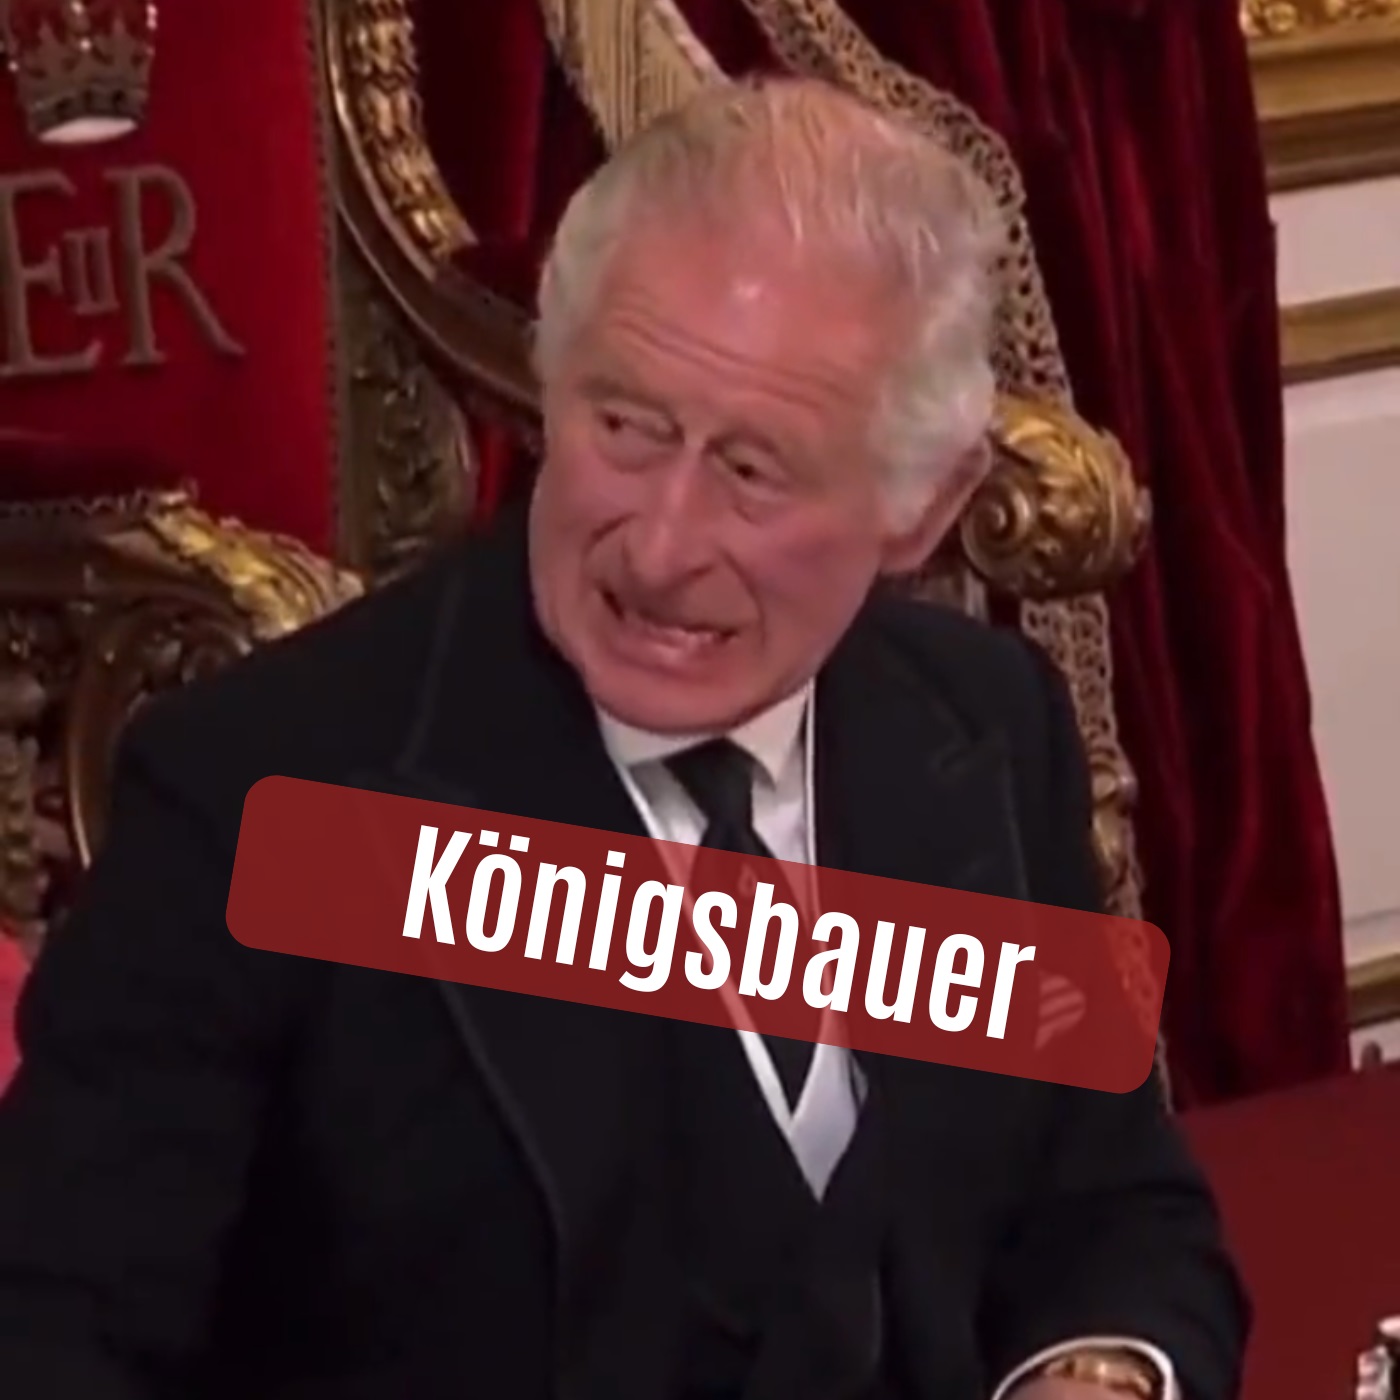 Königsbauer